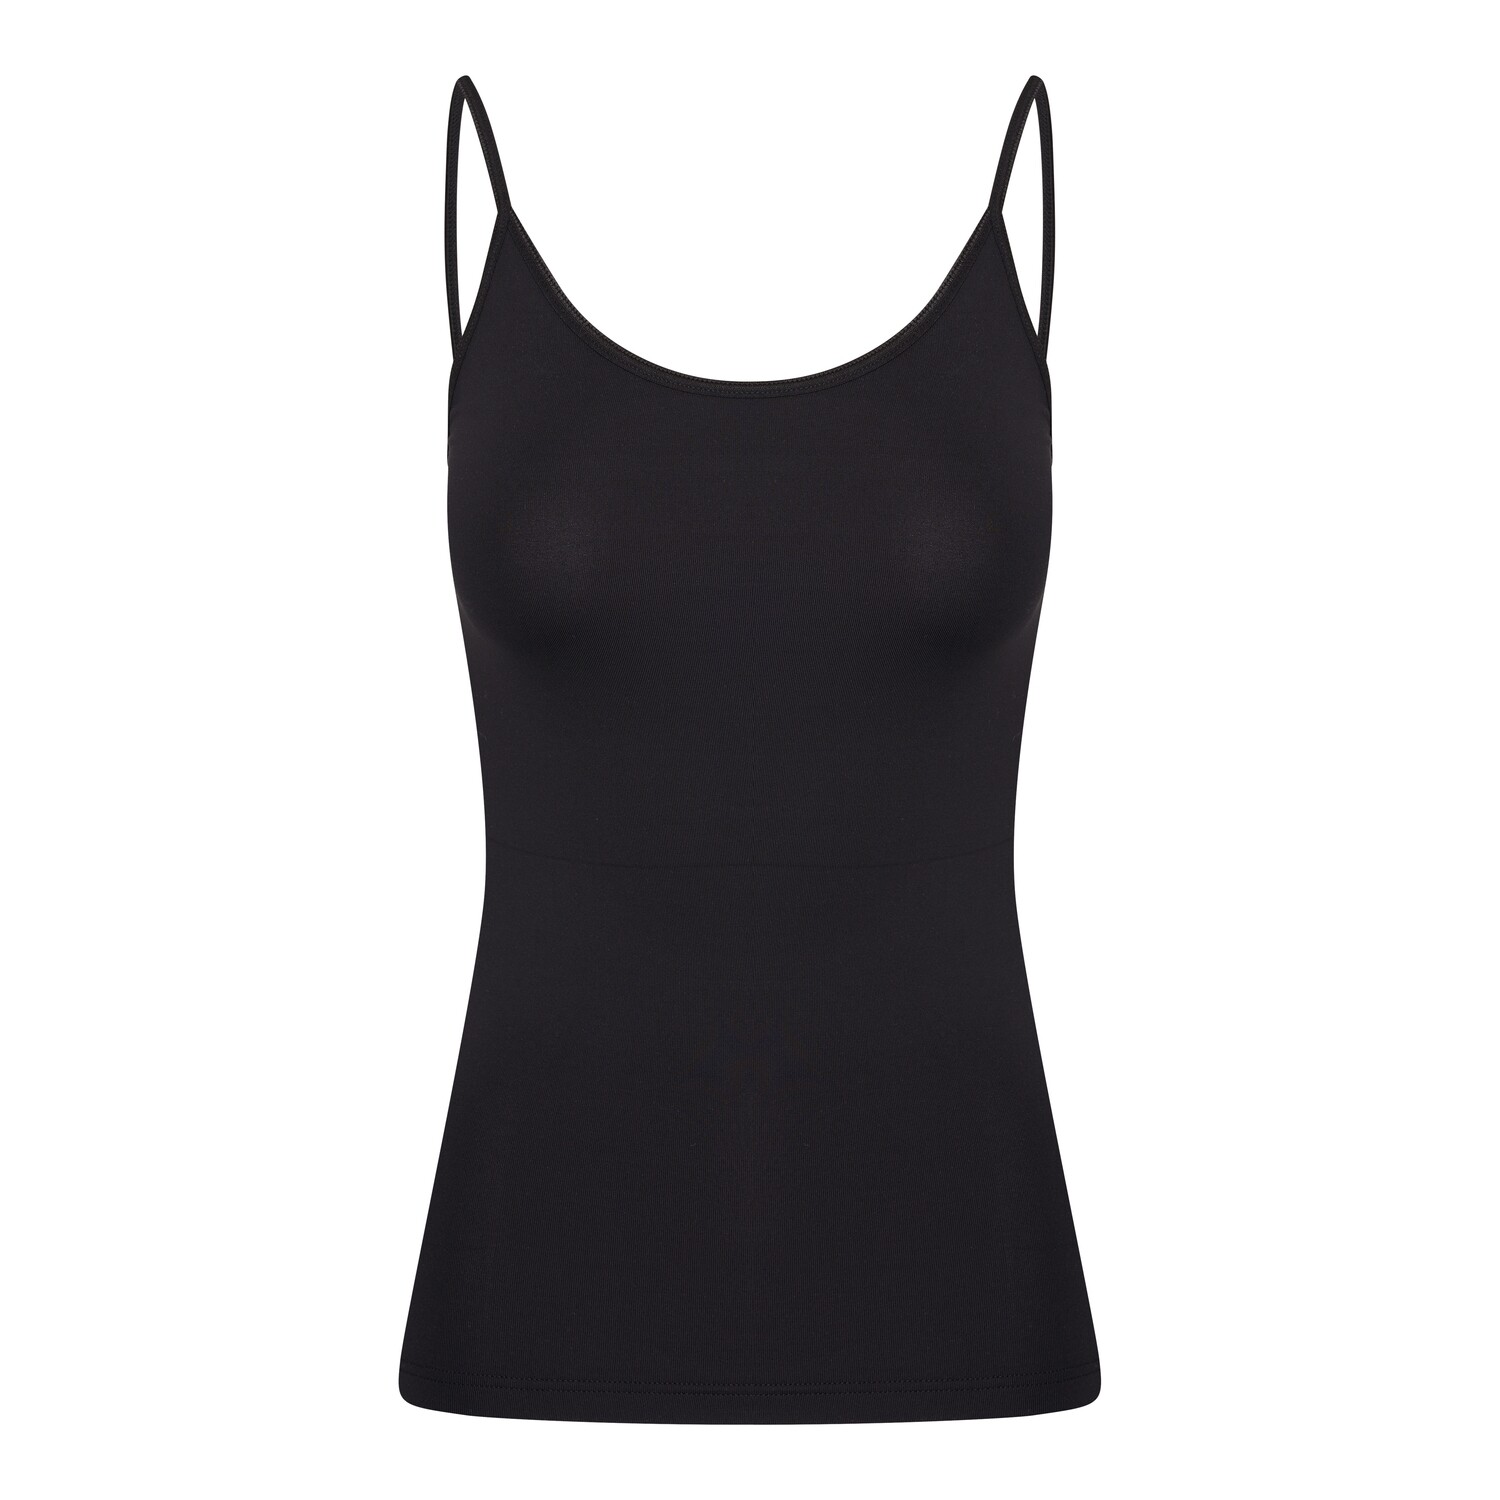 (07-526) Dames top Elegance zwart XL